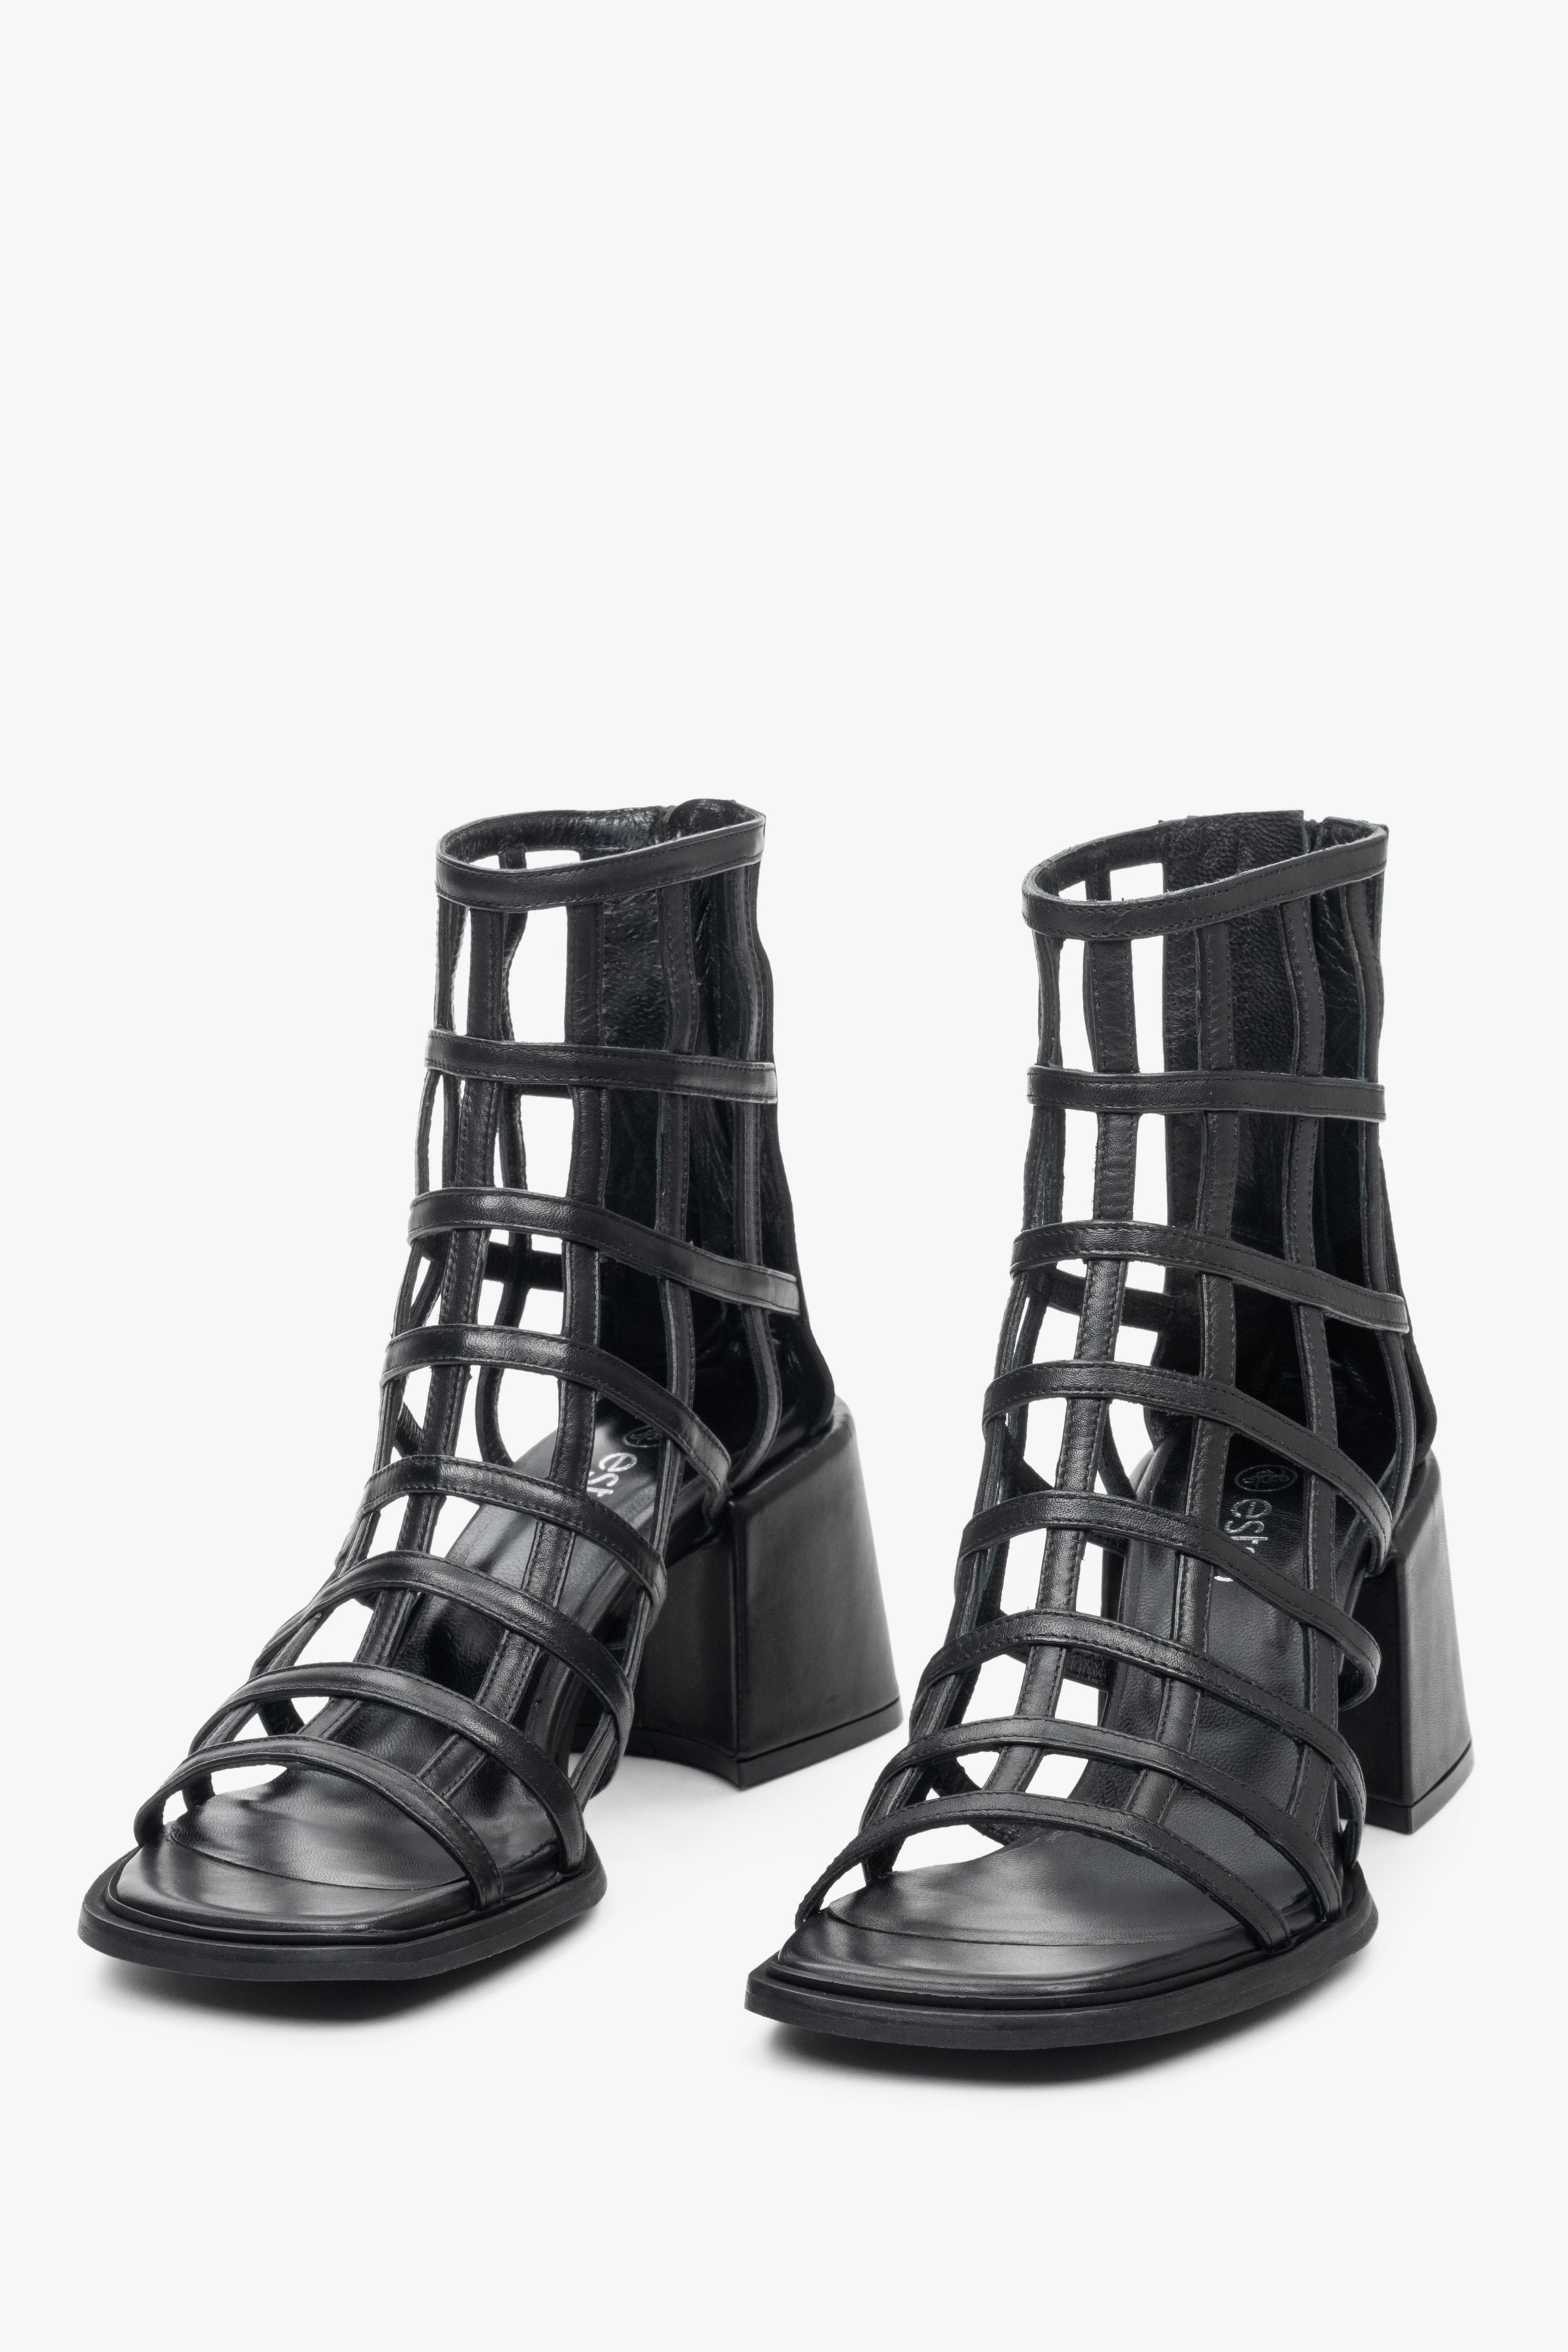 Sandały damskie w kolorze czarnym ze skóry naturalnej marki Estro - pogląd korpusu obuwia z przodu.